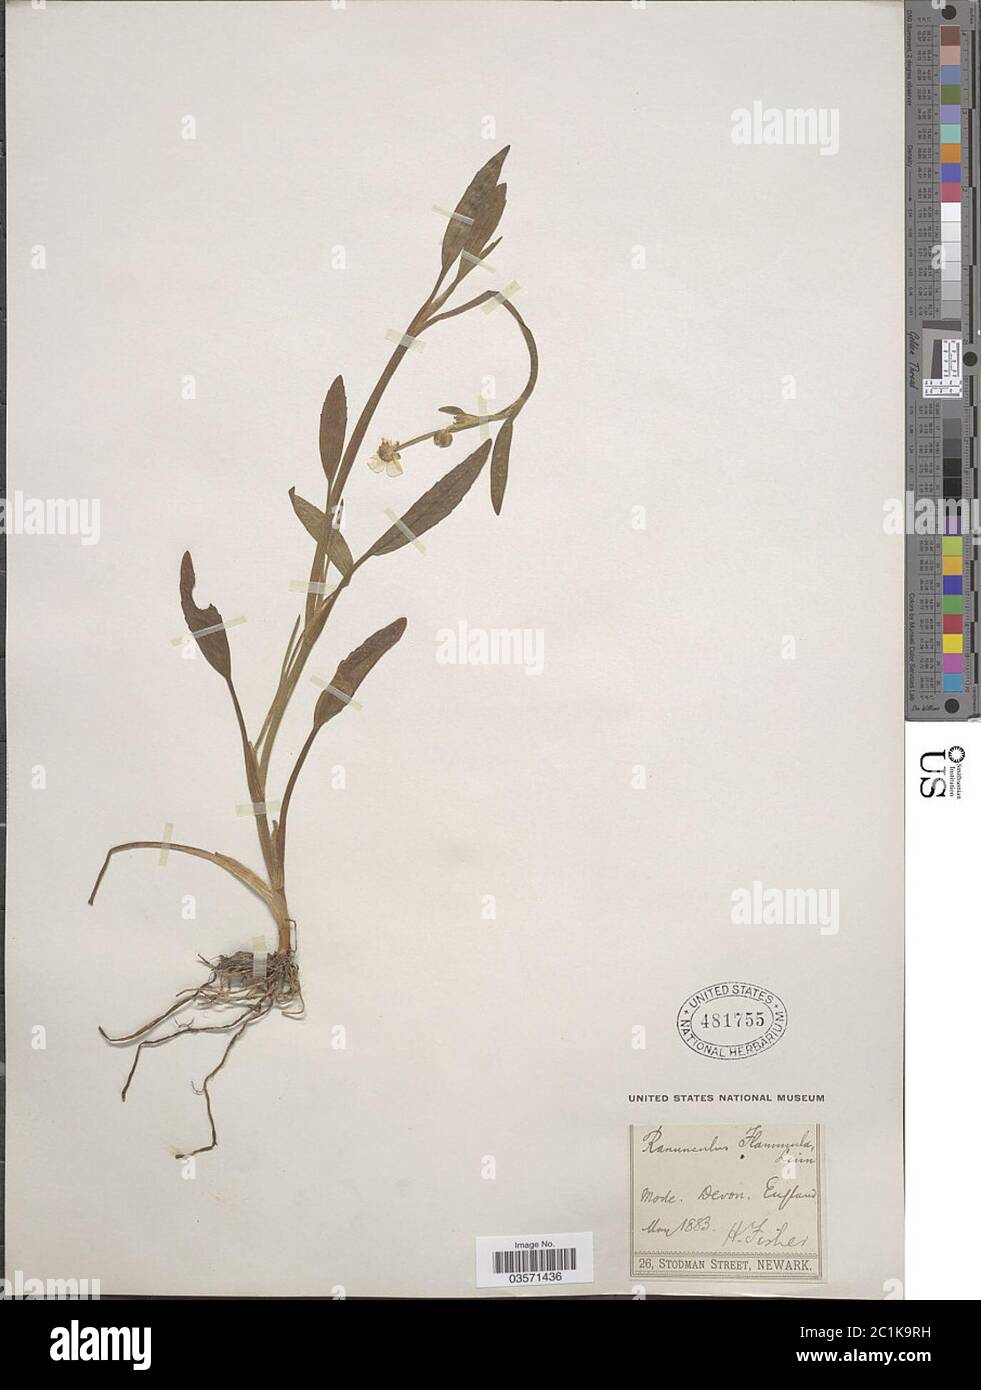 Ranunculus flammula Ranunculus flammula. Stock Photo